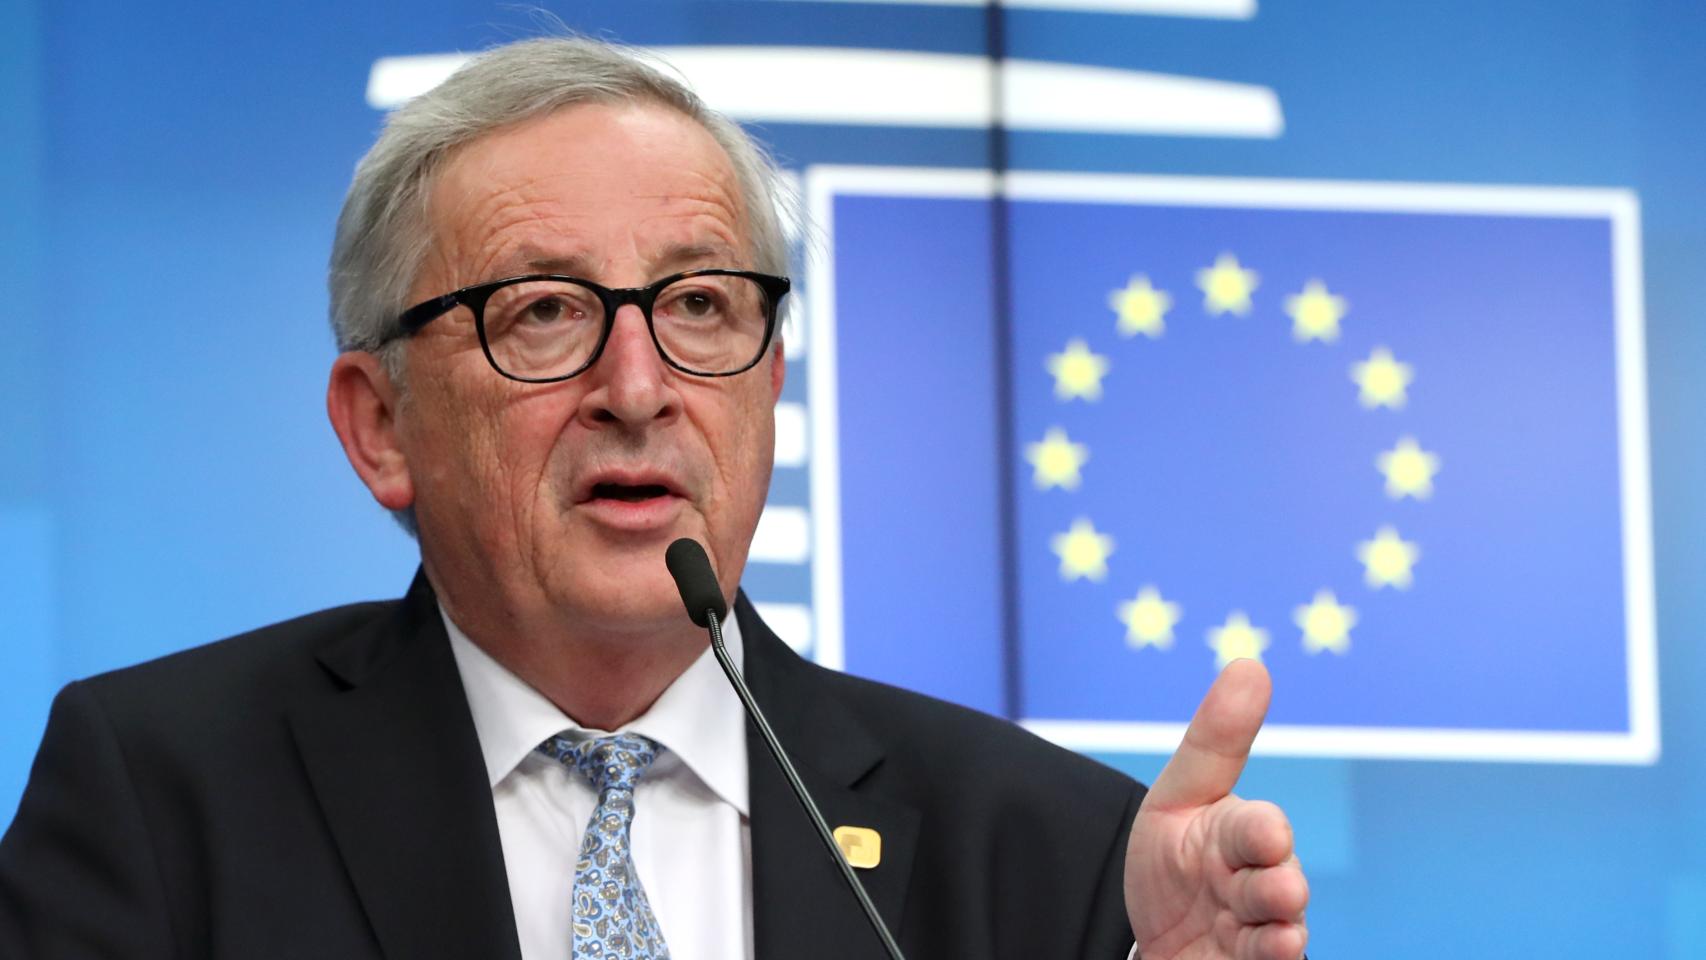 El presidente de la Comisión, Jean-Claude Juncker, presenta su agenda para 2019-2024